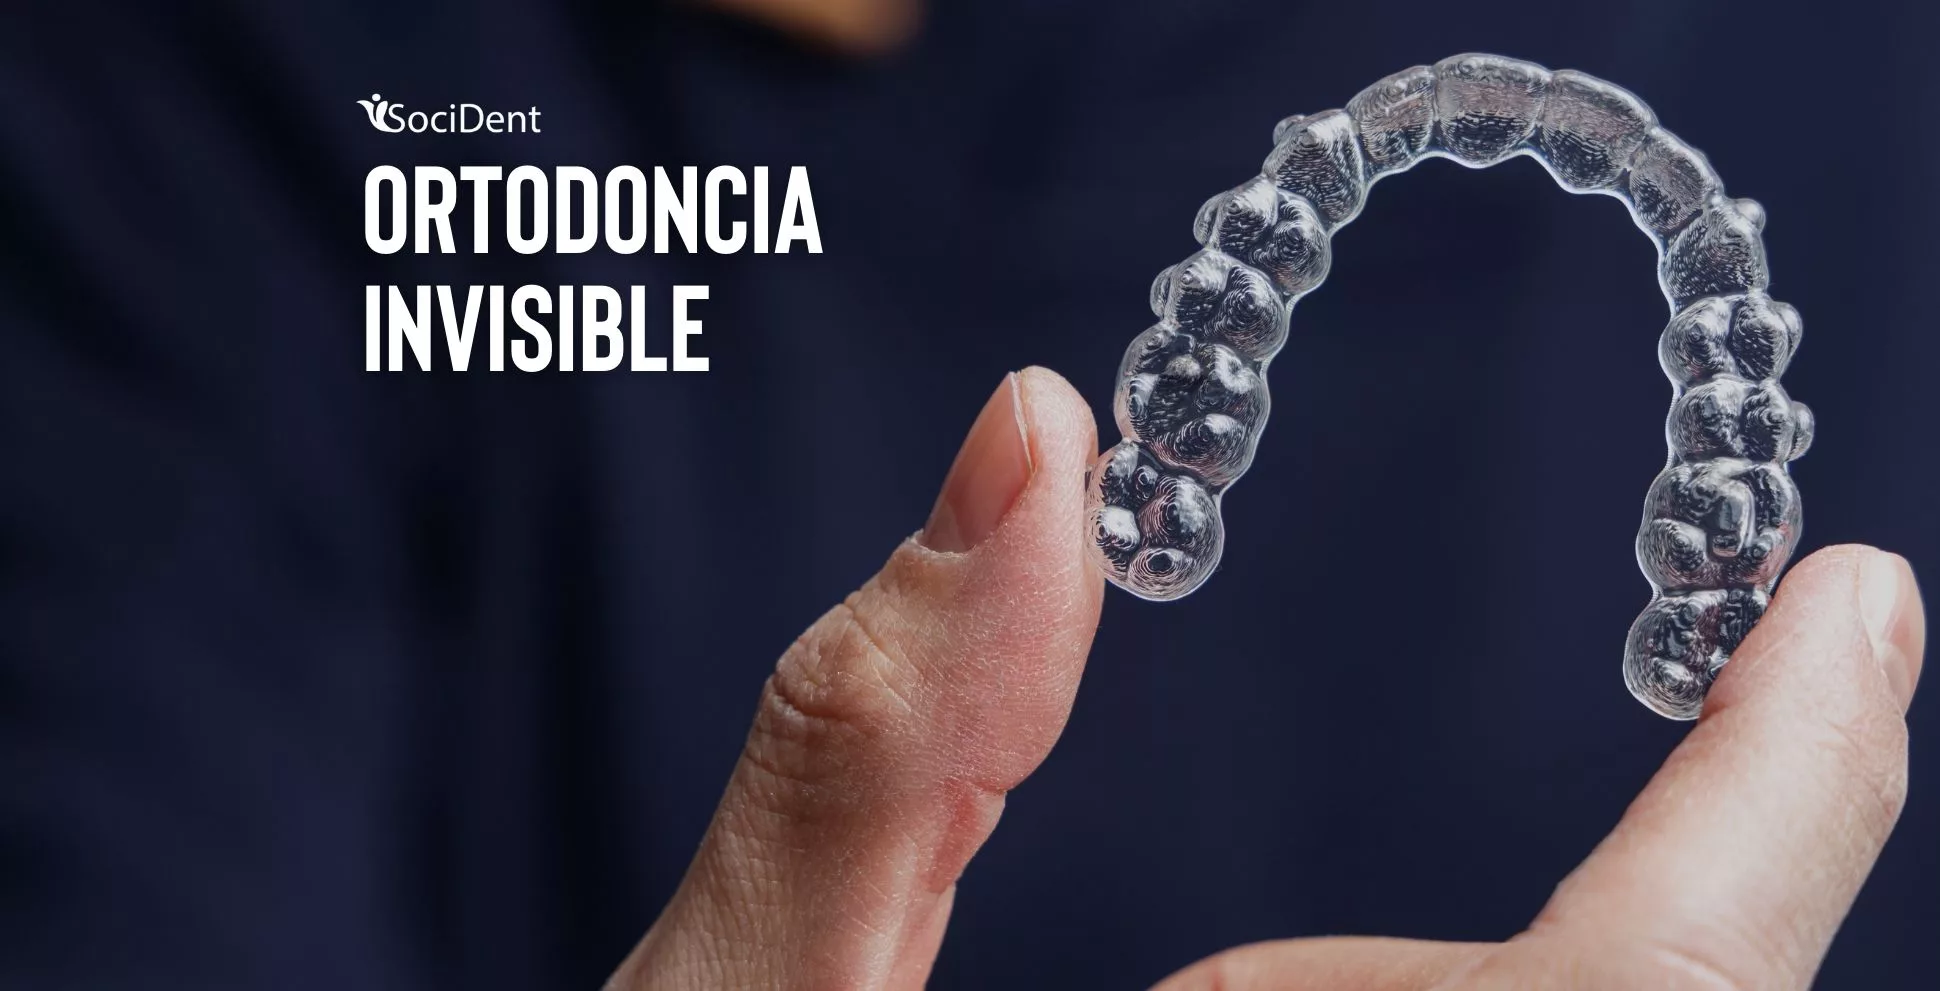 socident ortodoncia invisible en mostoles navalcarnero y madrid